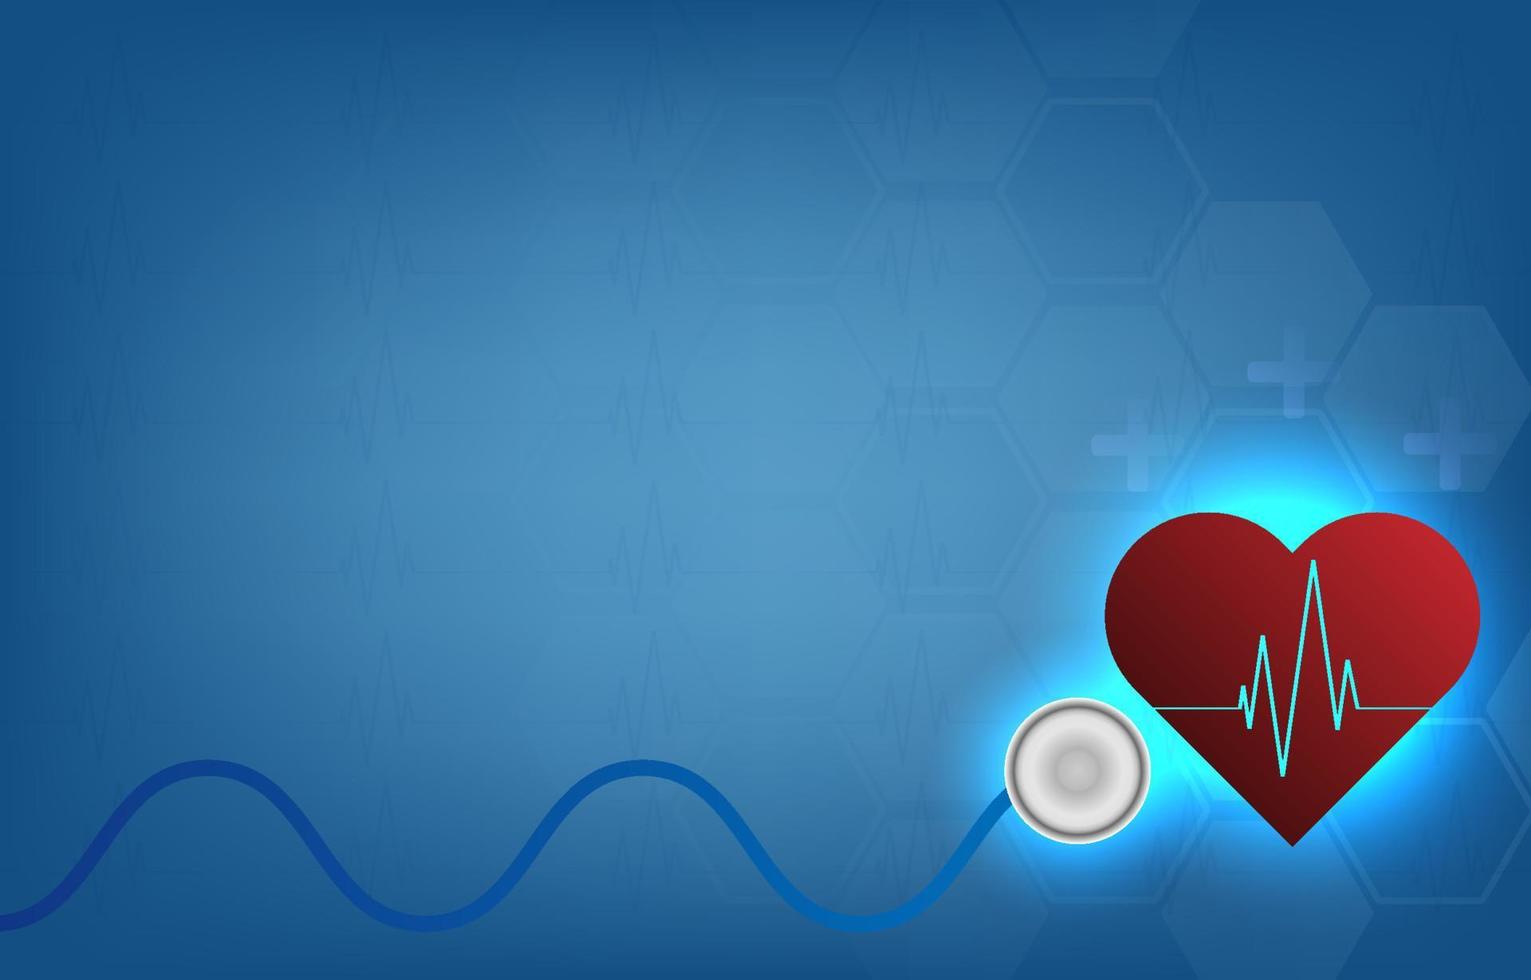 stéthoscope avec contrôle cardiaque. services de santé. outils pour médecin inspecter le rythme cardiaque. bilan médical cardiaque concept de santé et de médecine. illustration vectorielle. vecteur